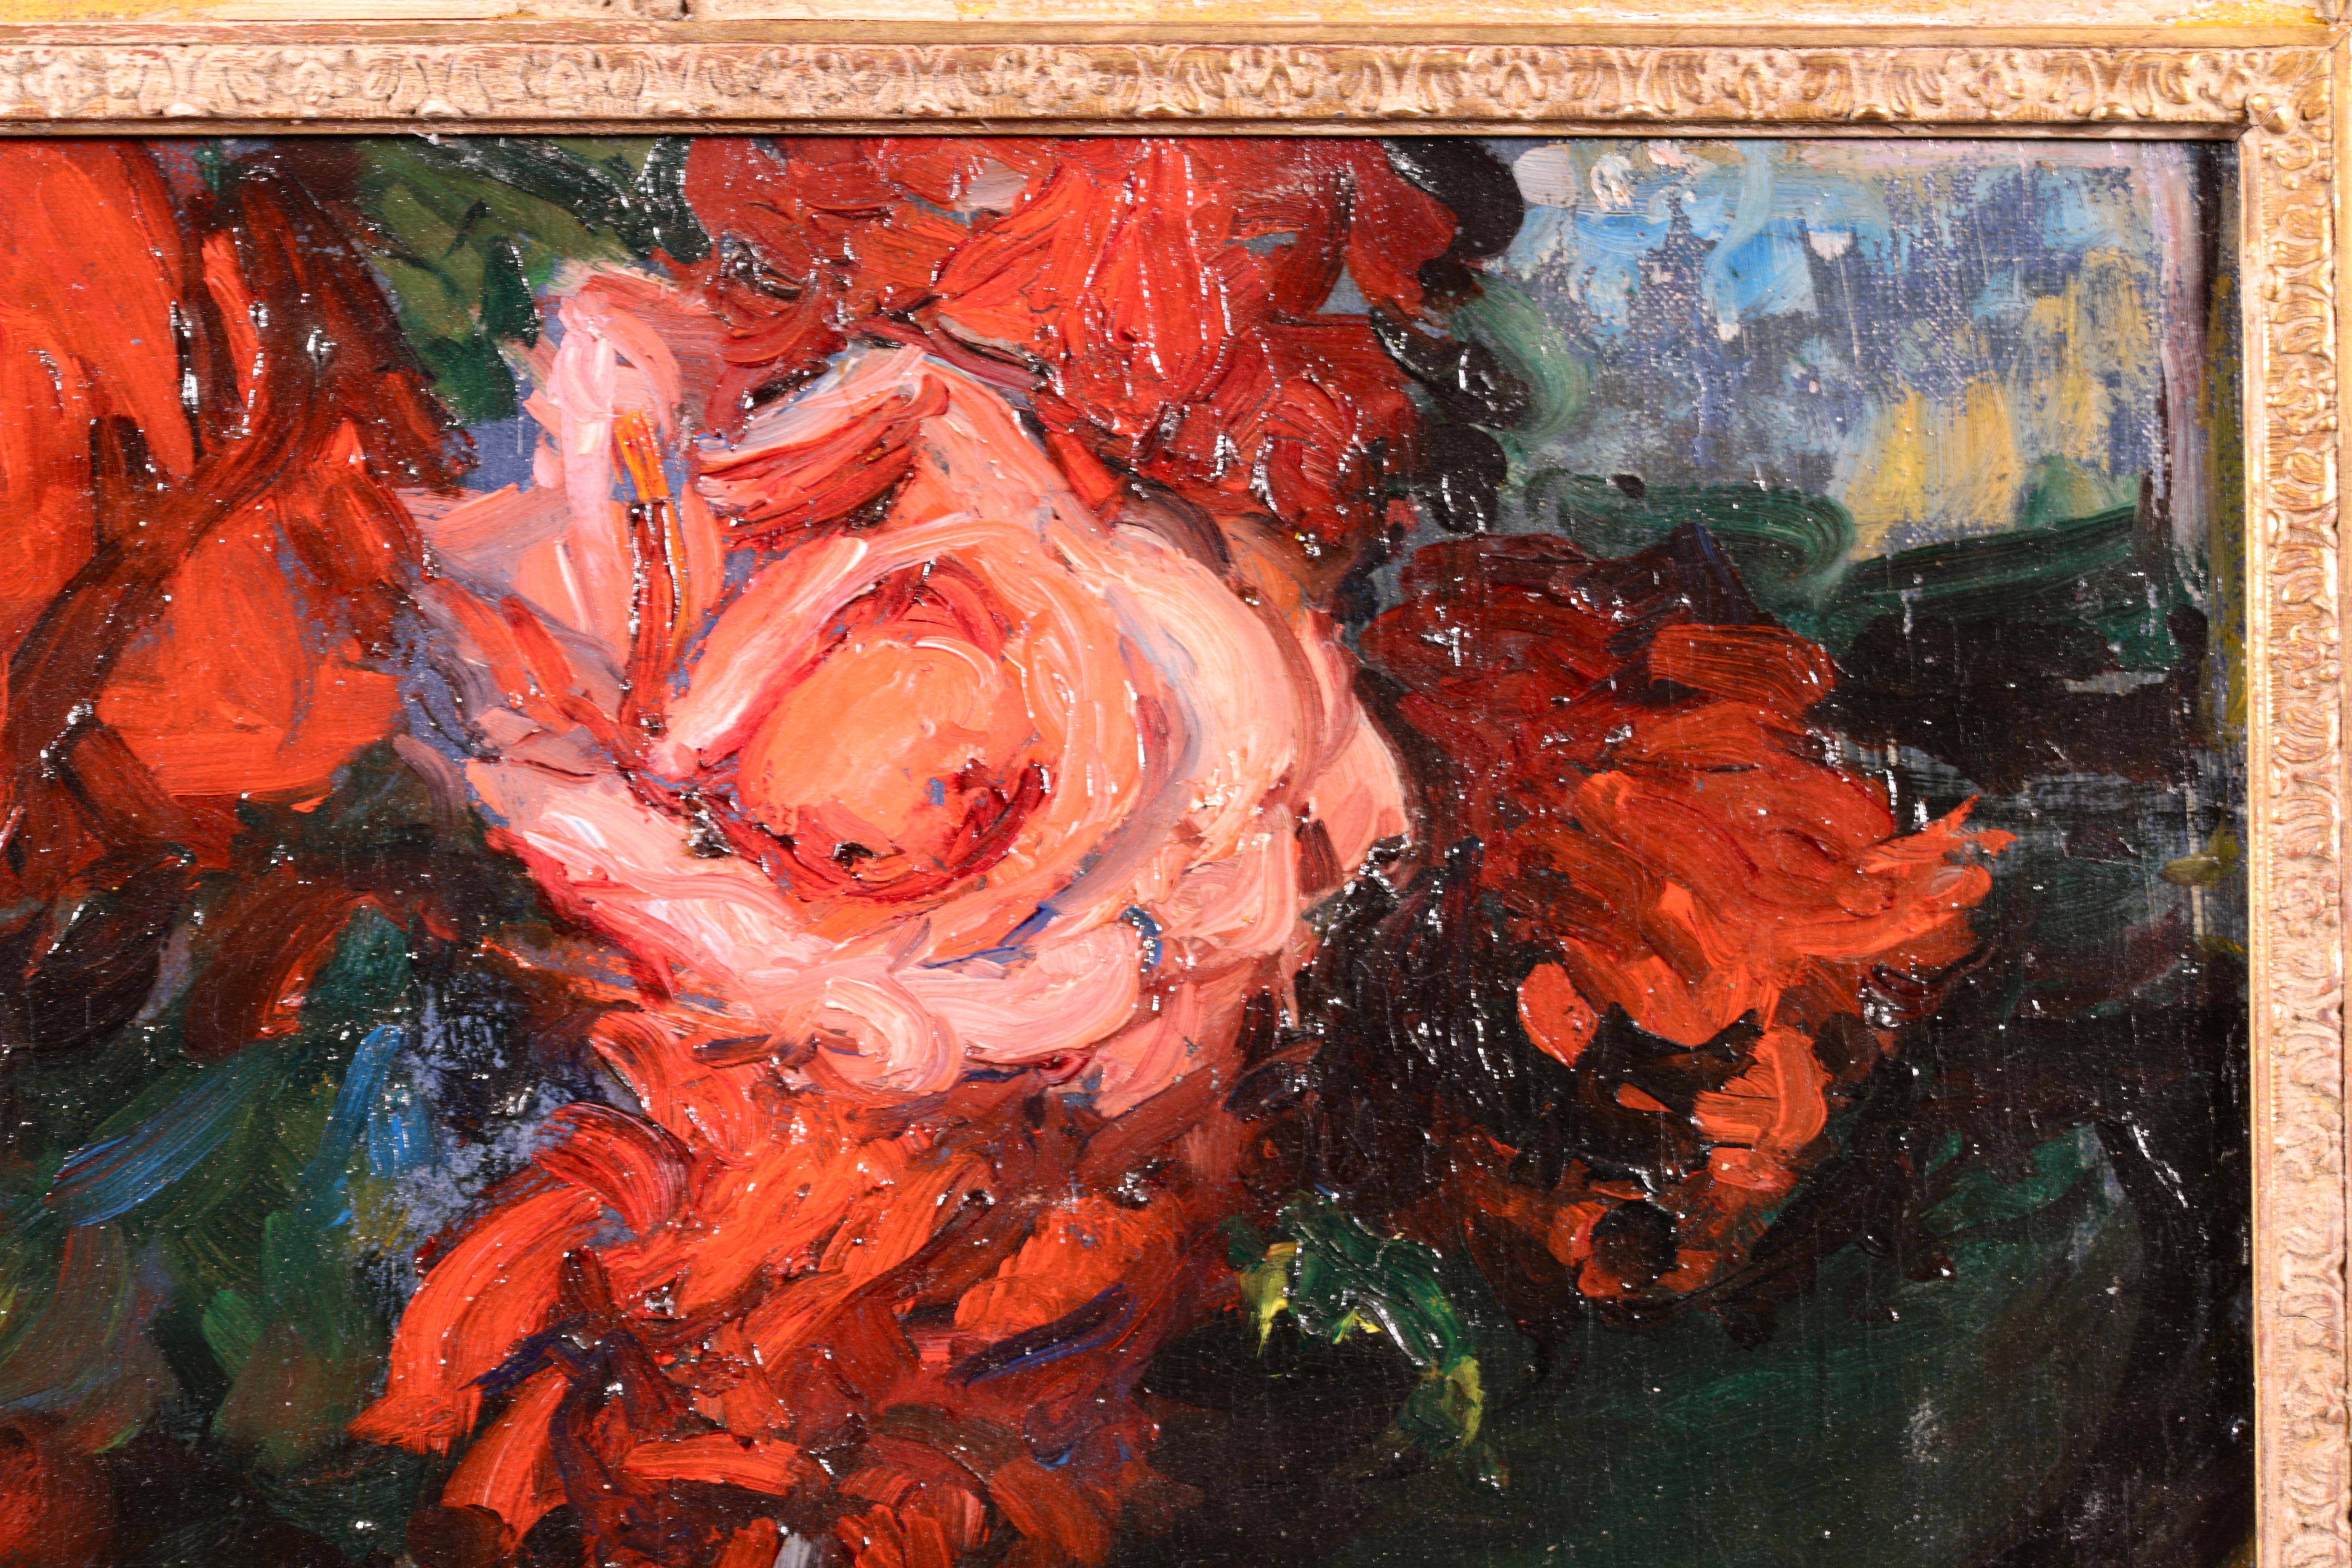 Les Roses de L'Etang - Post Impressionist Oil, Flowers by Jacques-Emile Blanche - Painting by Jacques Emile Blanche